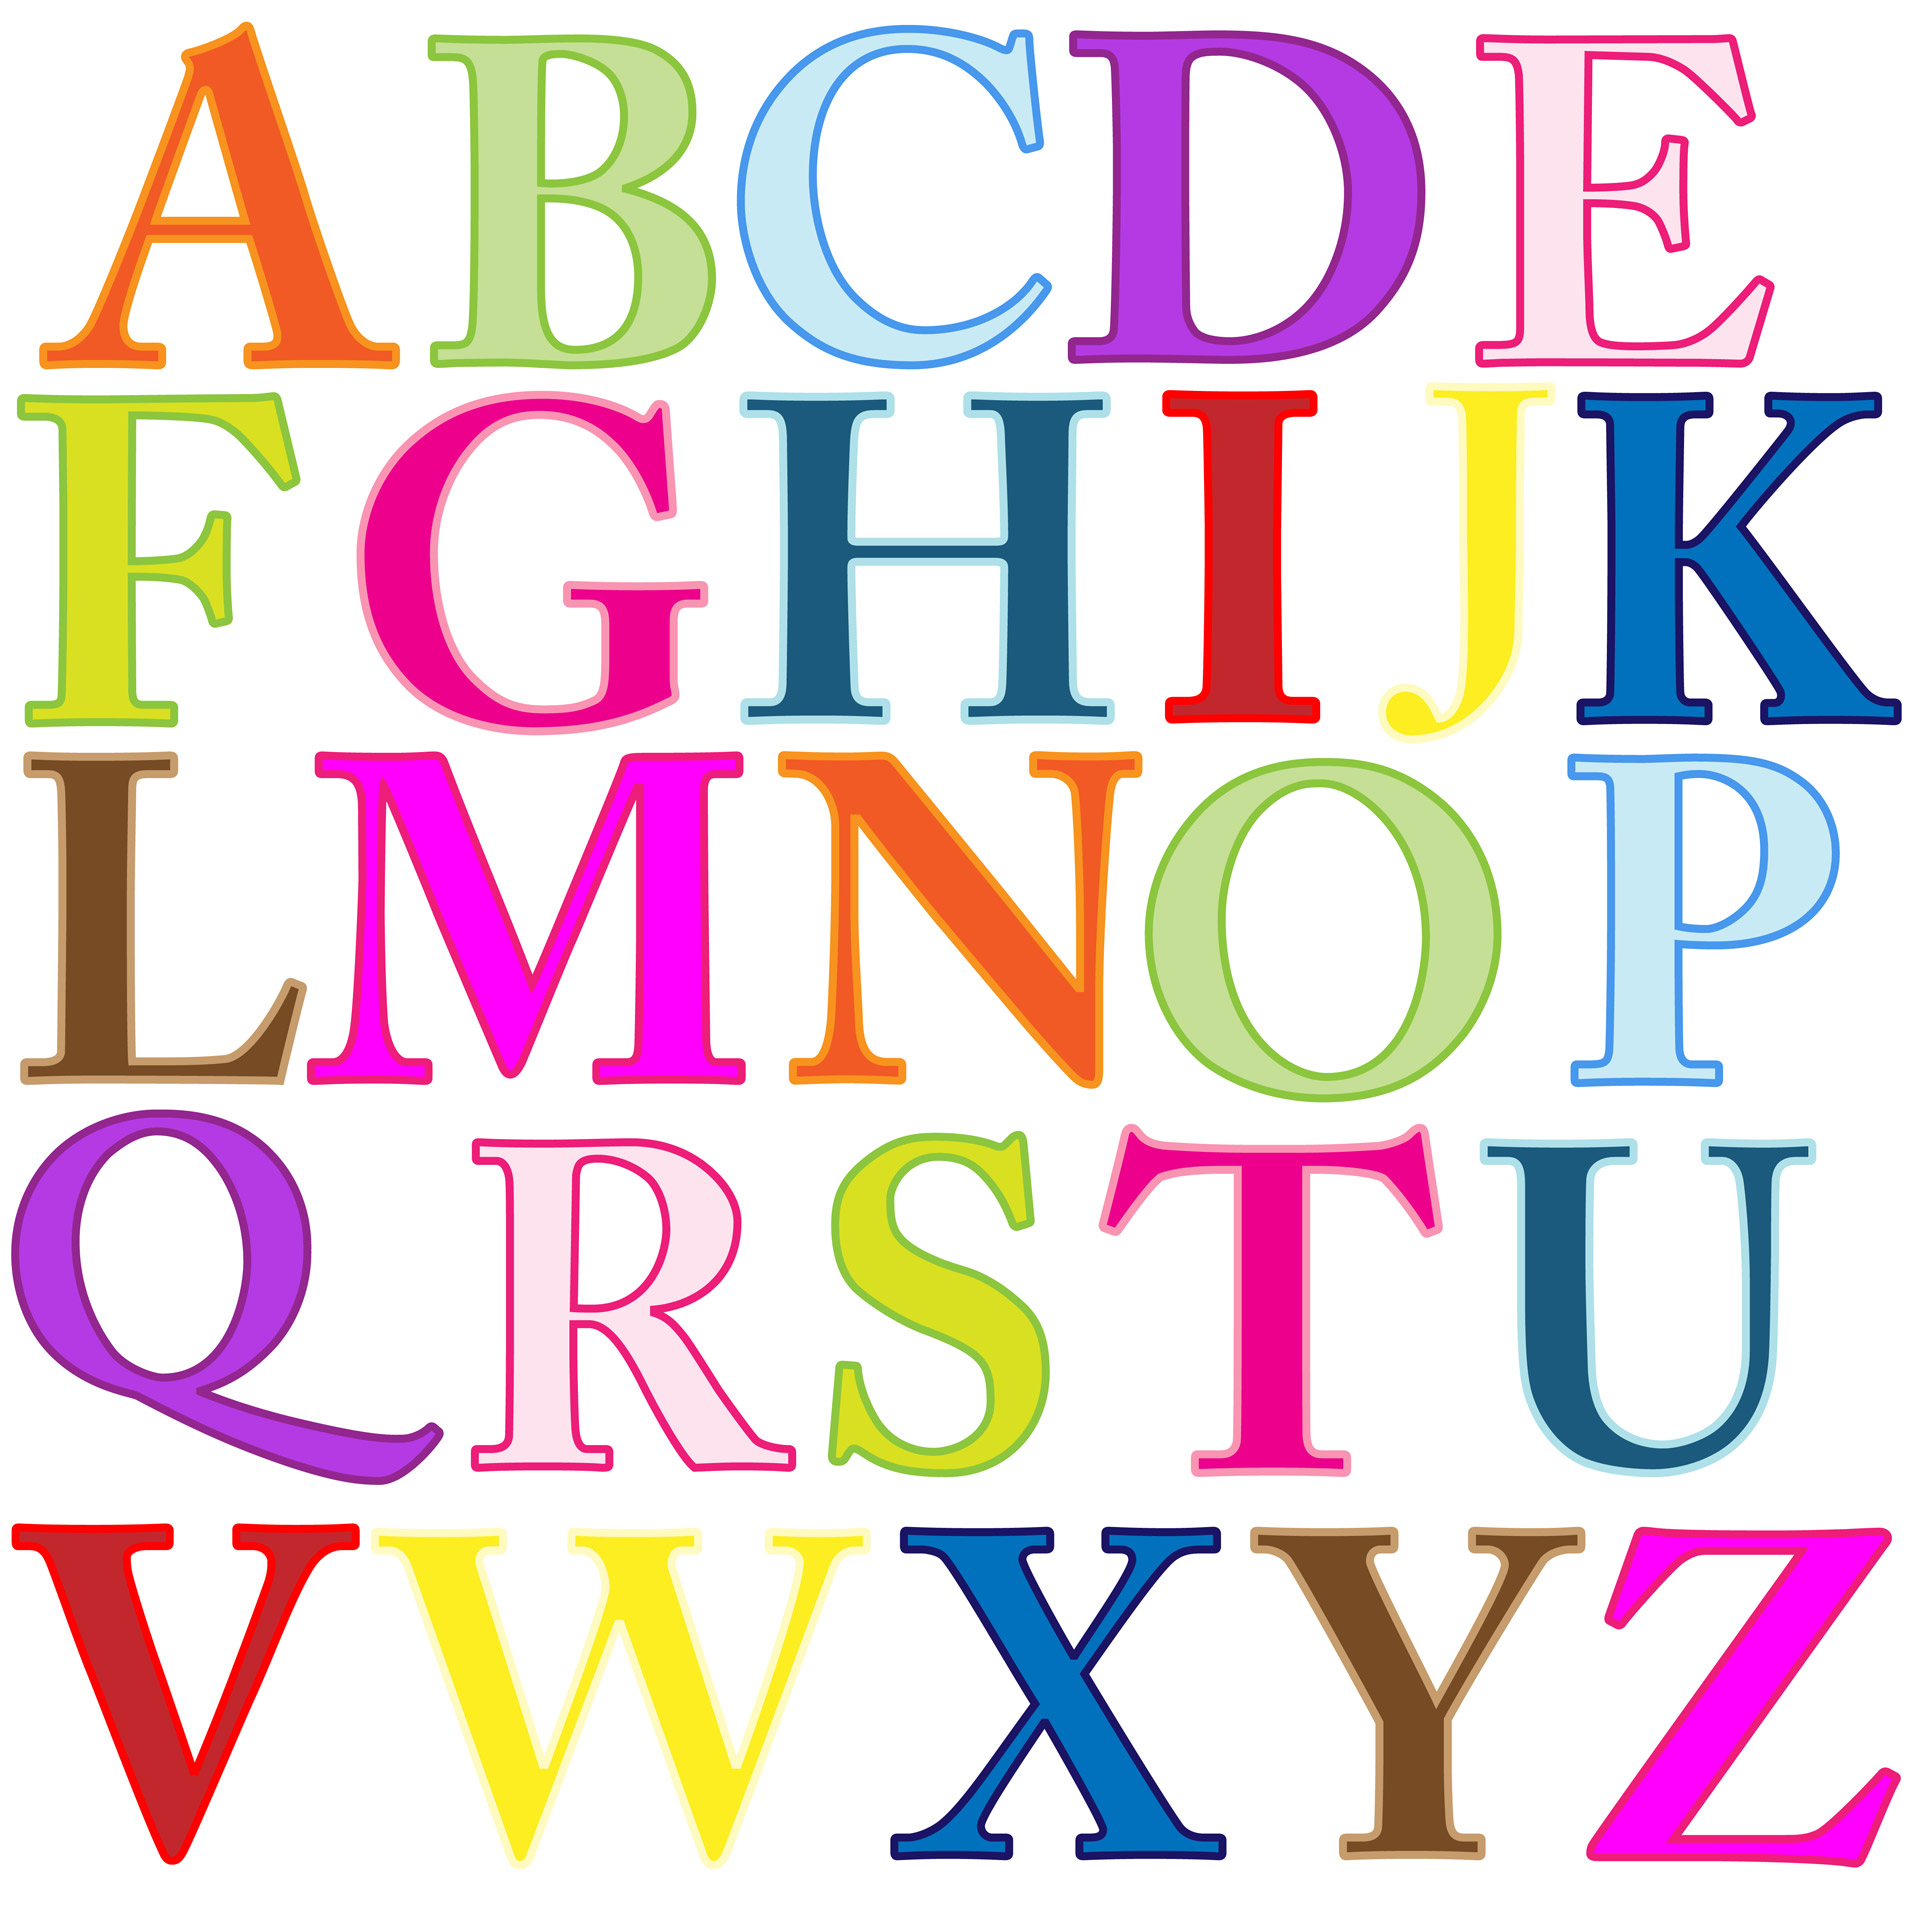 alphabet letters alphabet letters free photo